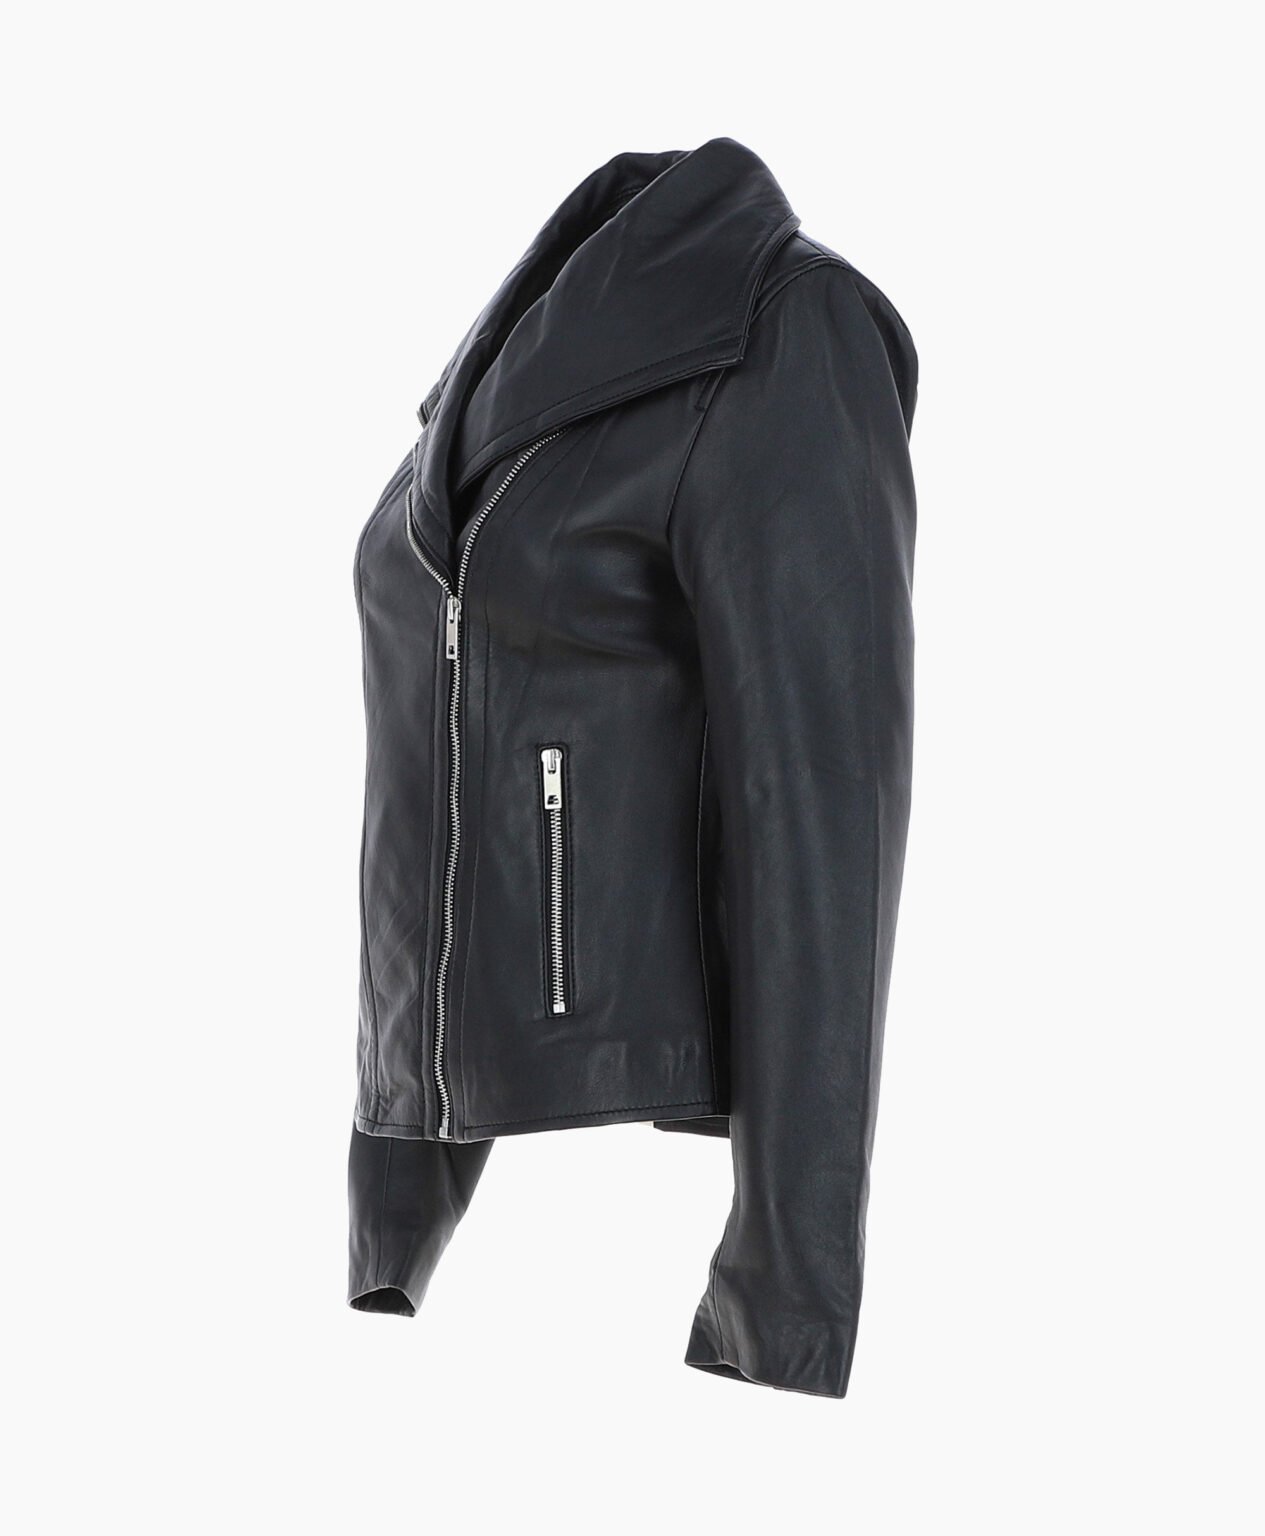 vogue-jacket-leather-jacket-fashion-collar-black-shelby-image201